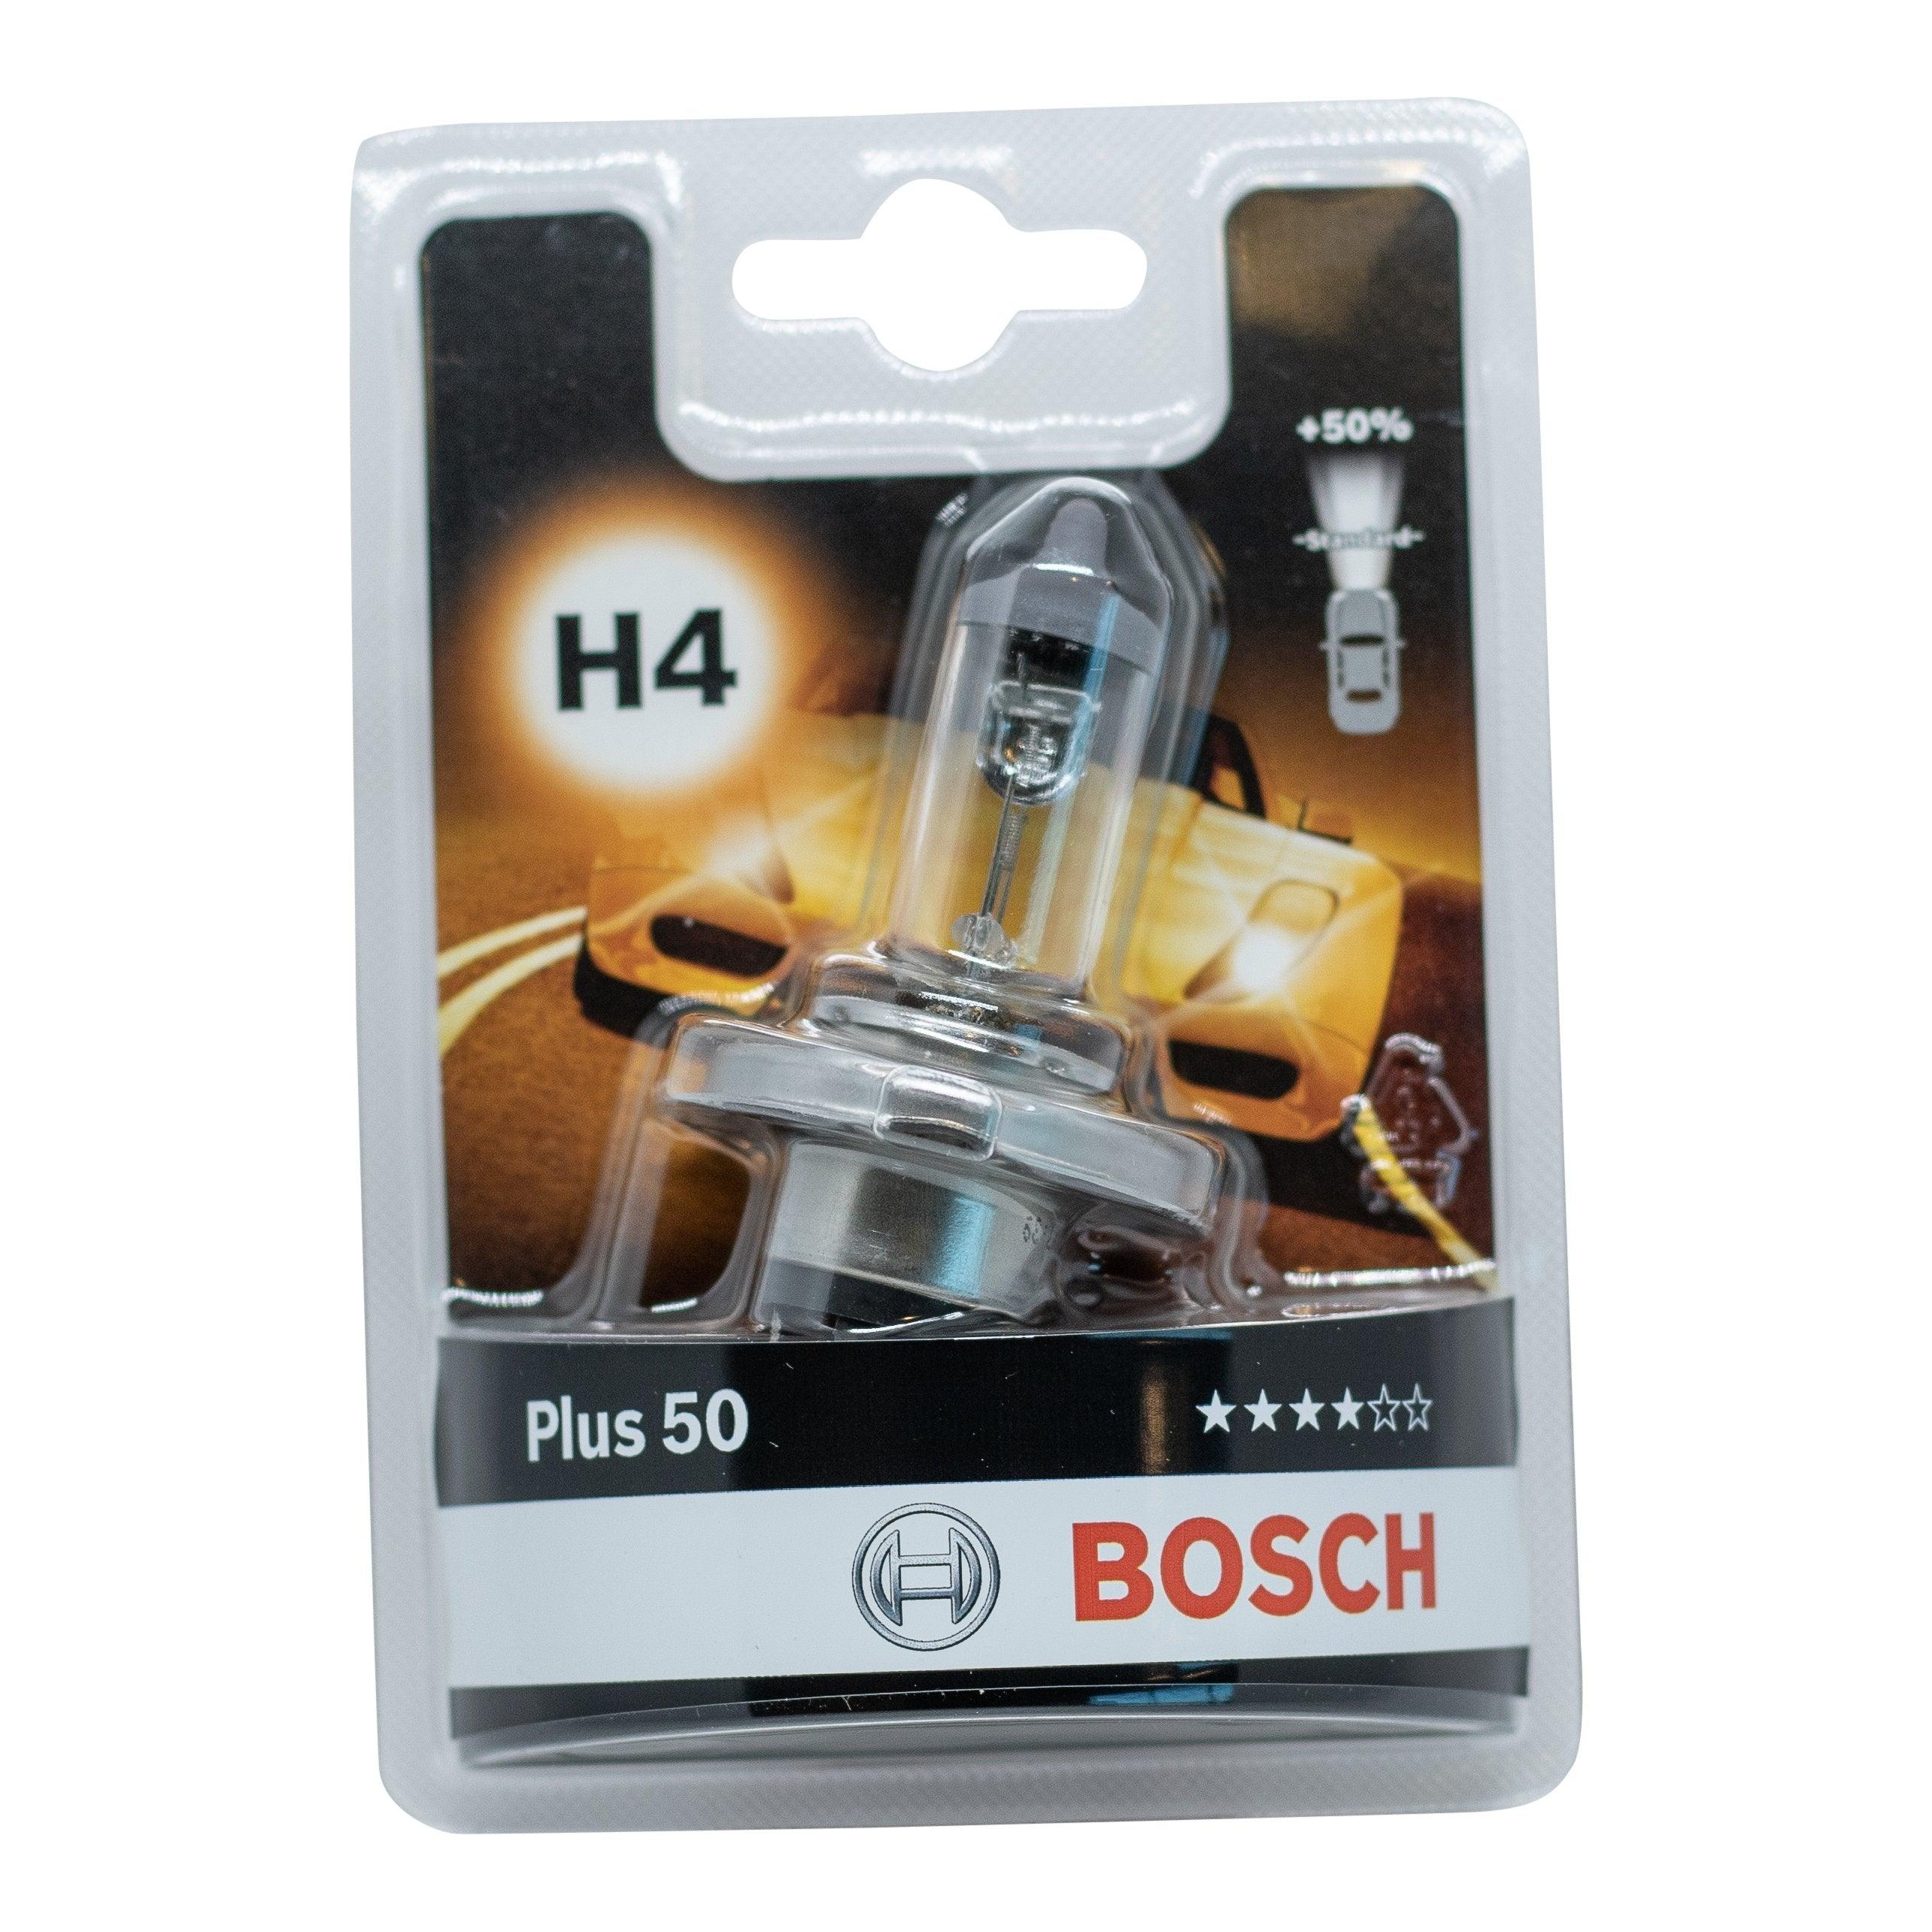 Se Bosch Plus 50 H4 12V hos XpertCleaning.dk